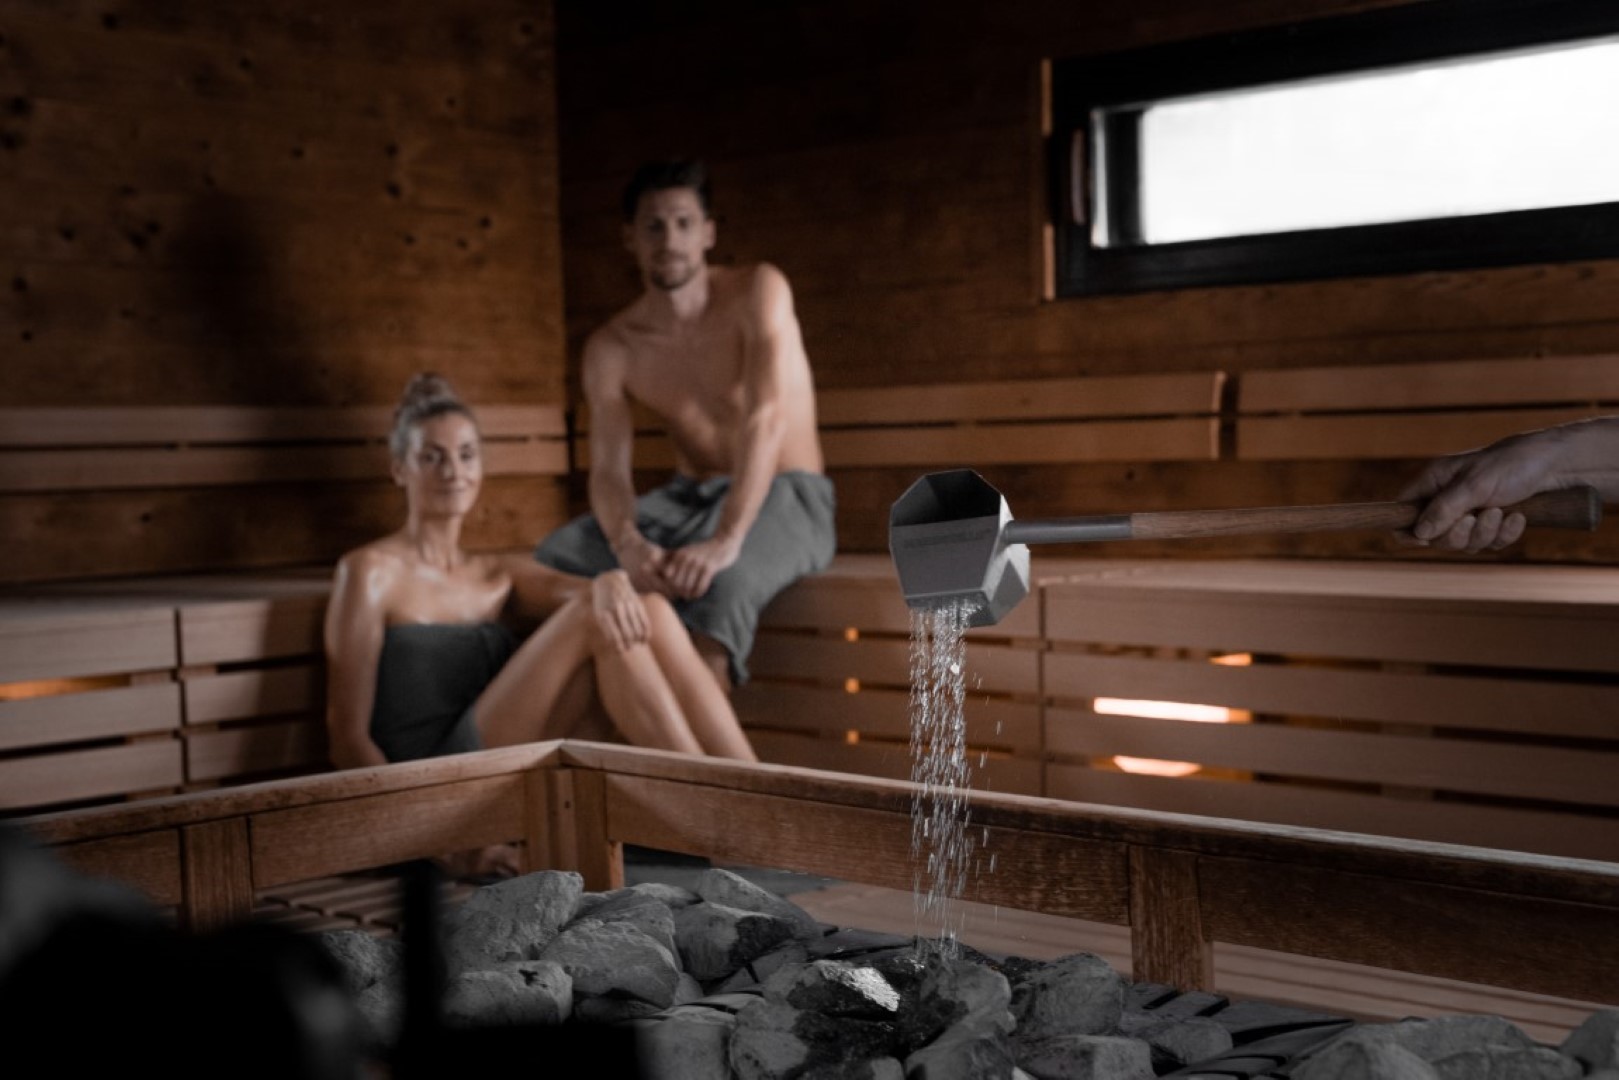 Zwei Personen entspannen in einer holzverkleideten Sauna, während Wasser auf heiße Steine gegossen wird und Dampf aufsteigt.